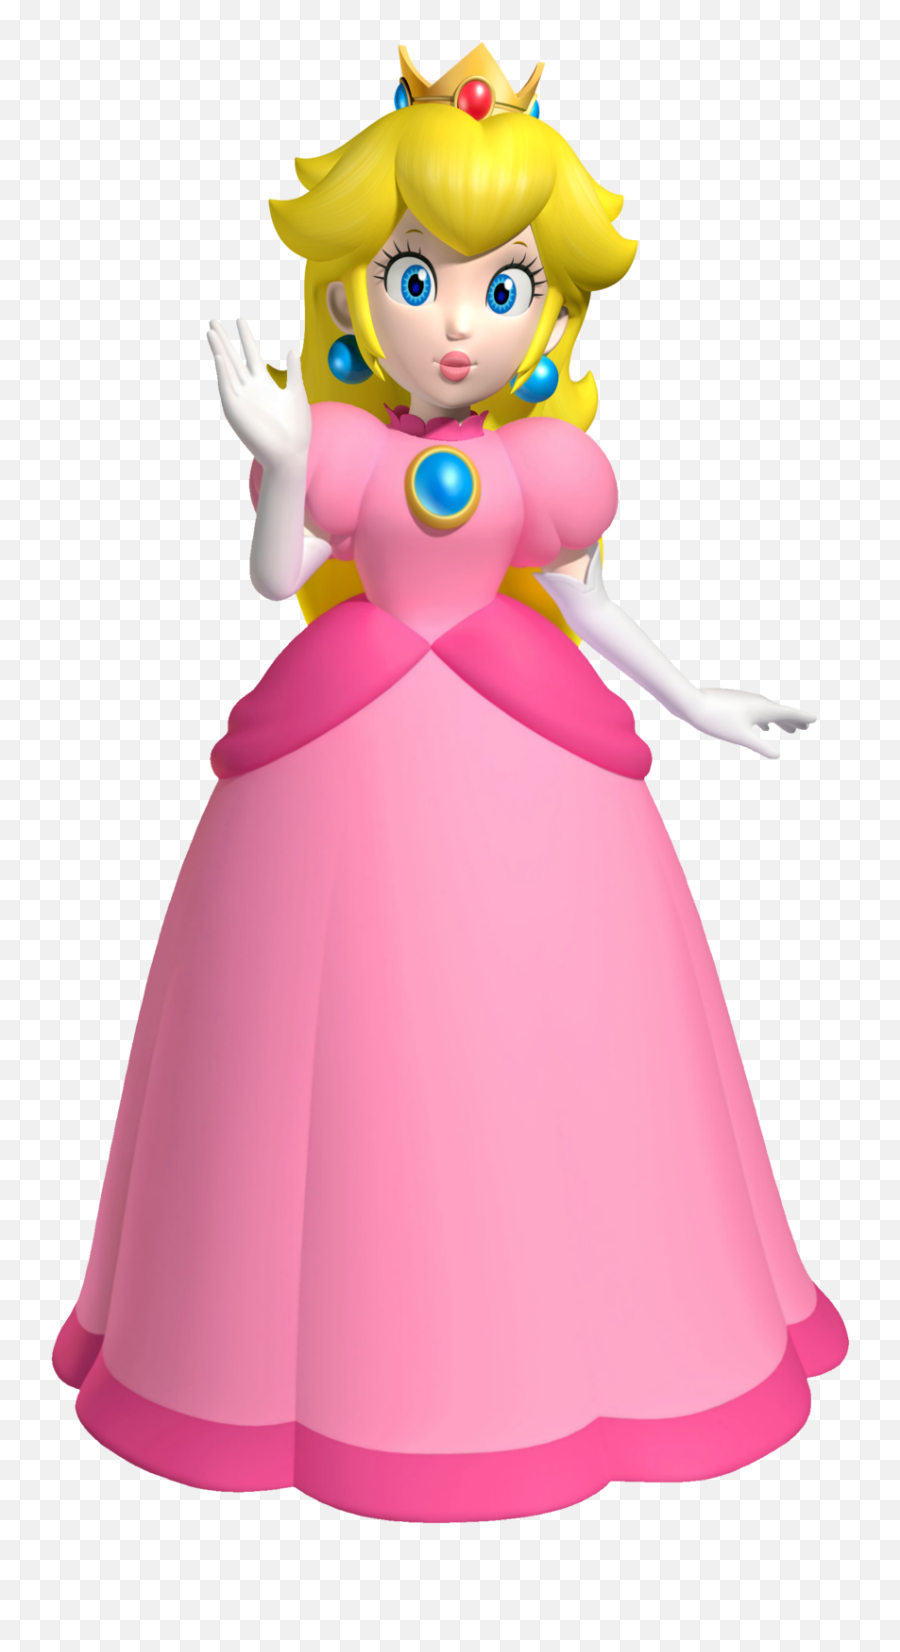 Transparent Background Princess Peach - Princesa Peach Png,Princess Peach Transparent